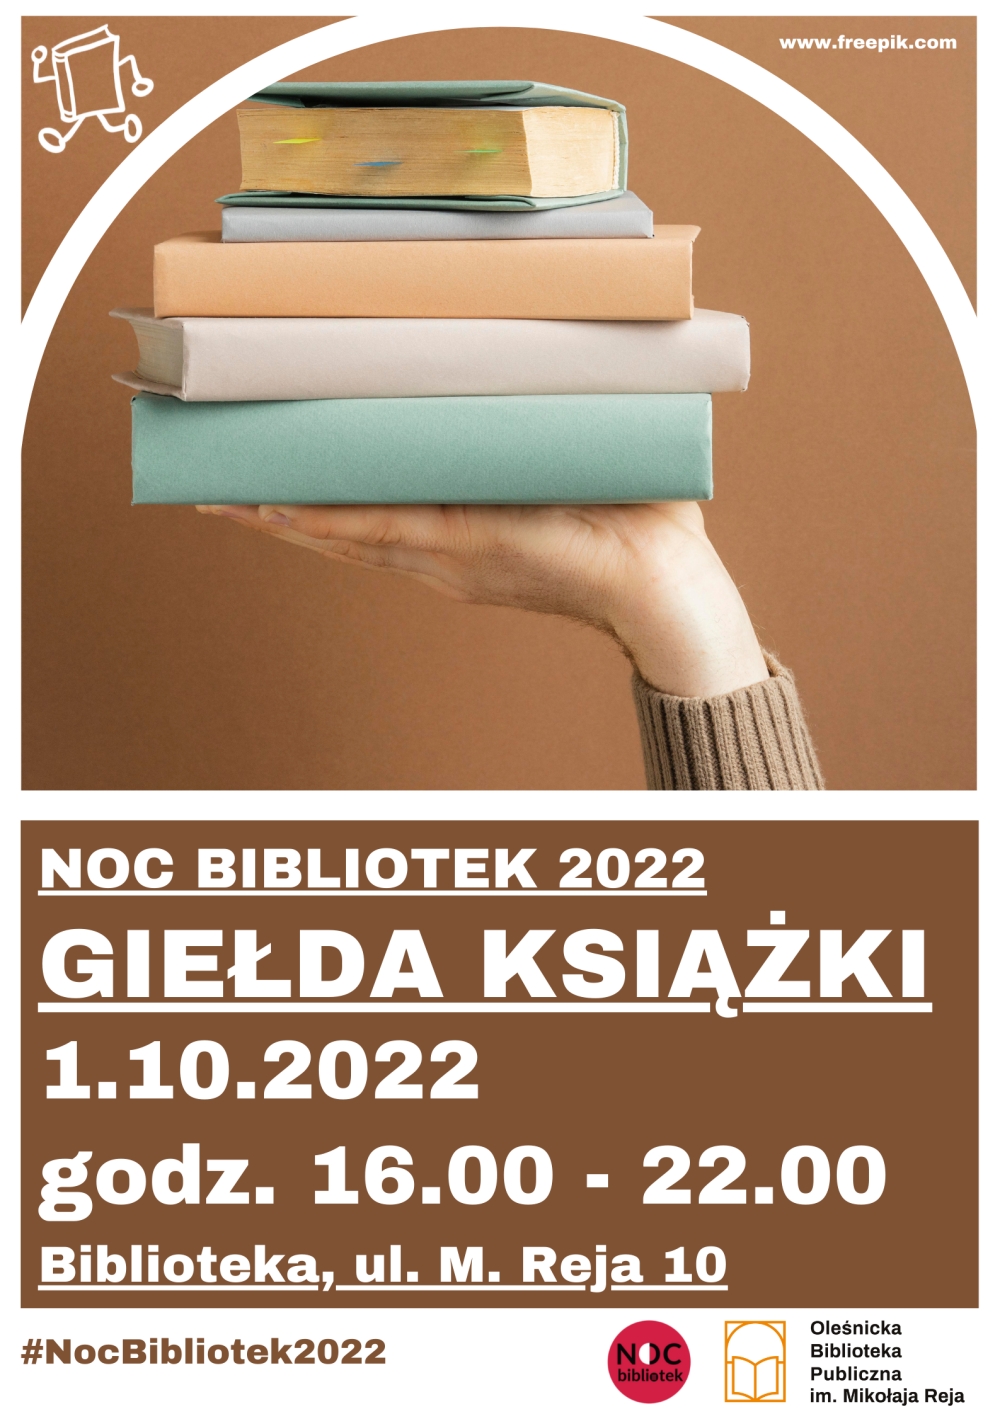 Plakat promujący Giełdę Książki w ramach Nocy Bibliotek 2022